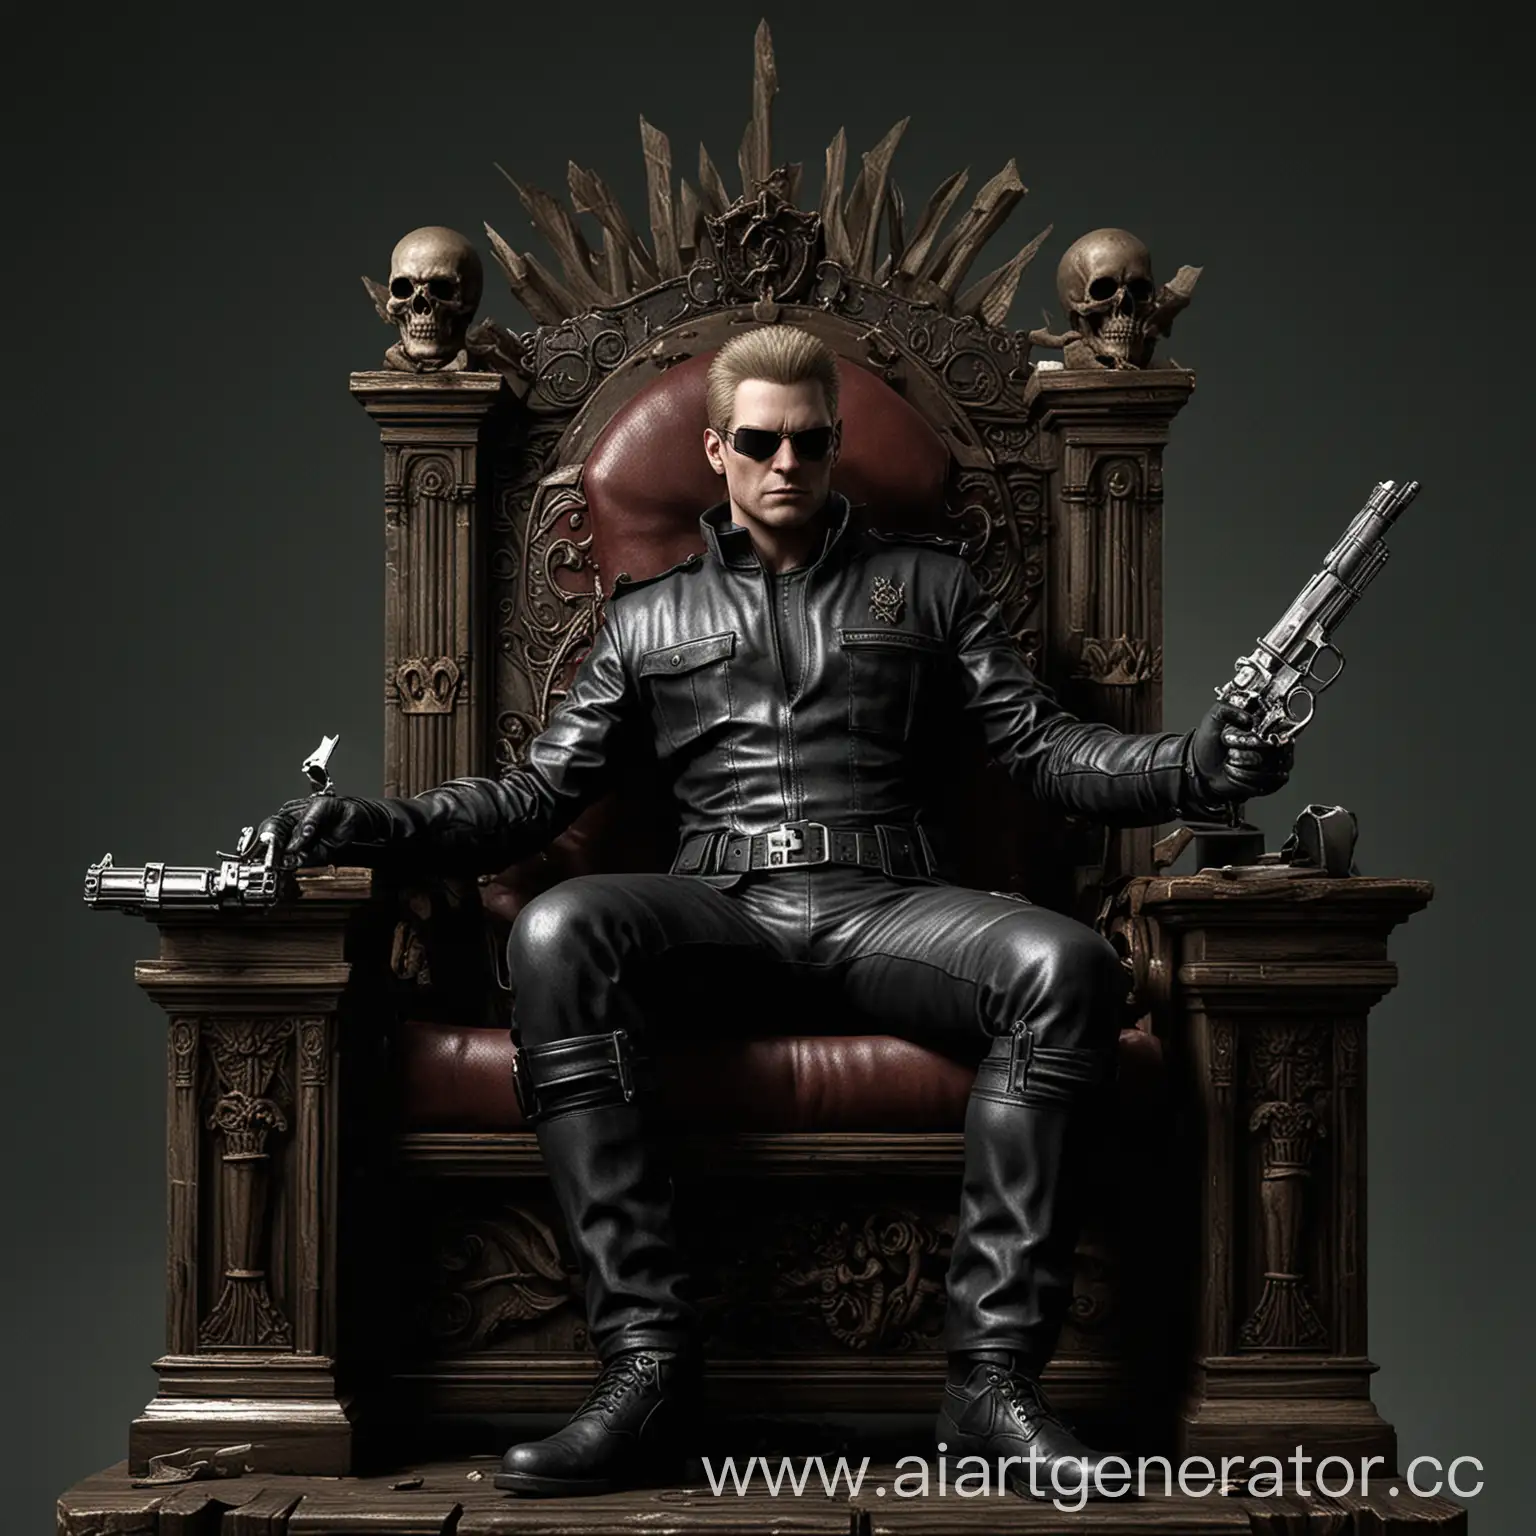 Альберт Вескер из серии игр «Resident Evil». Он сидит на троне. Закинул одну ногу на другую ногу. В правой руке держит Револьвер Winchester M1883. В левой руке держит череп.